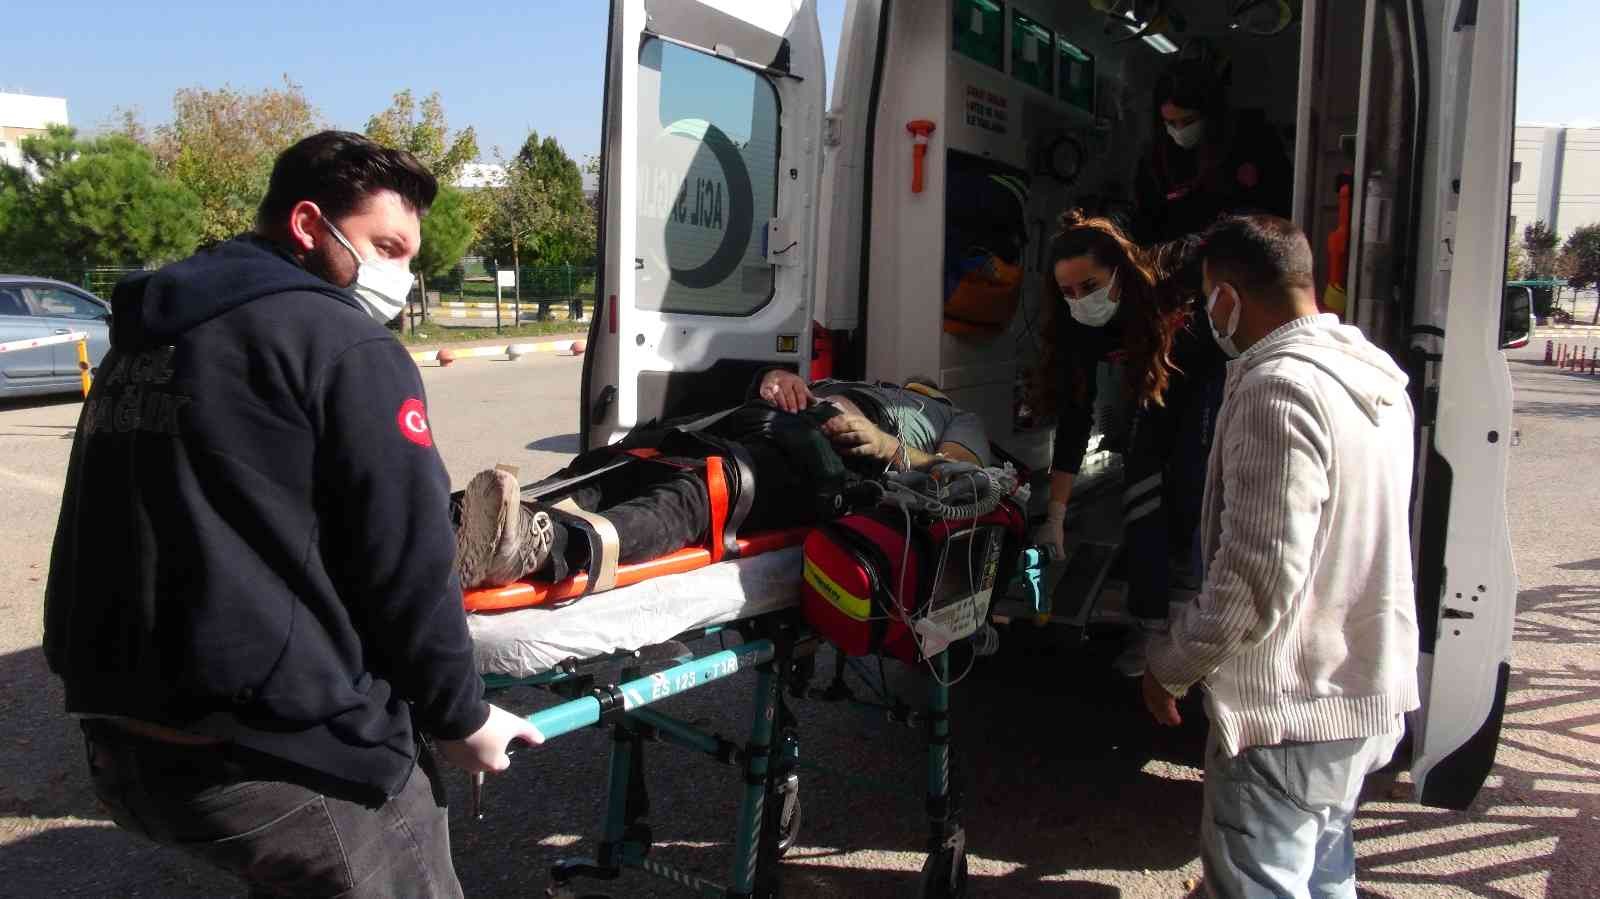 Lastik fabrikasında iskeleden düşen işçi yaralandı #kocaeli